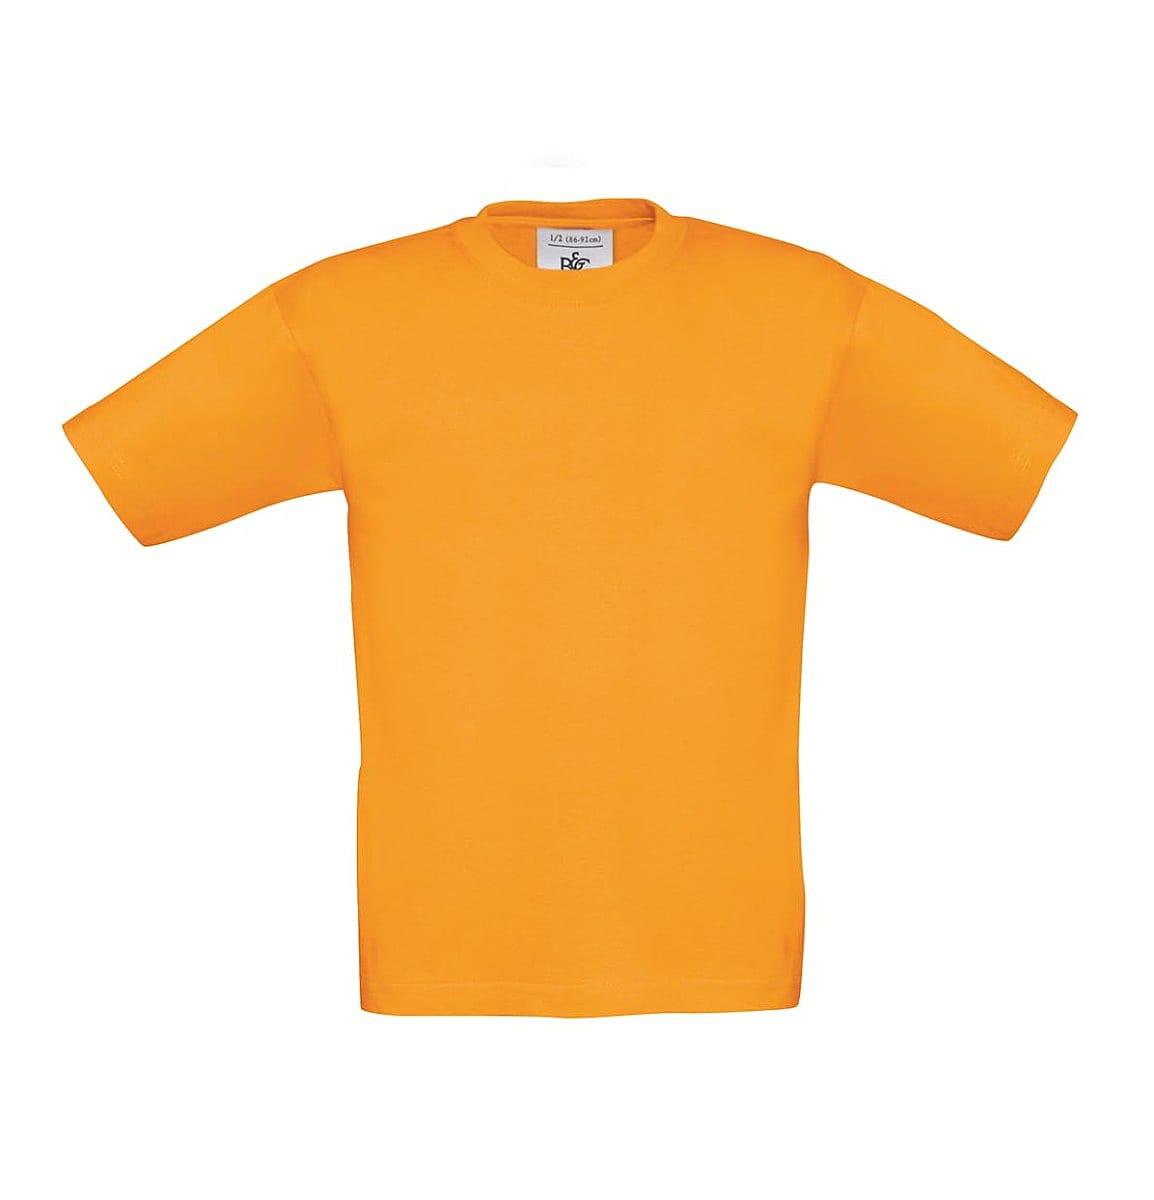 B&C Childrens Exact 190 T-Shirt in Orange (Product Code: TK301)